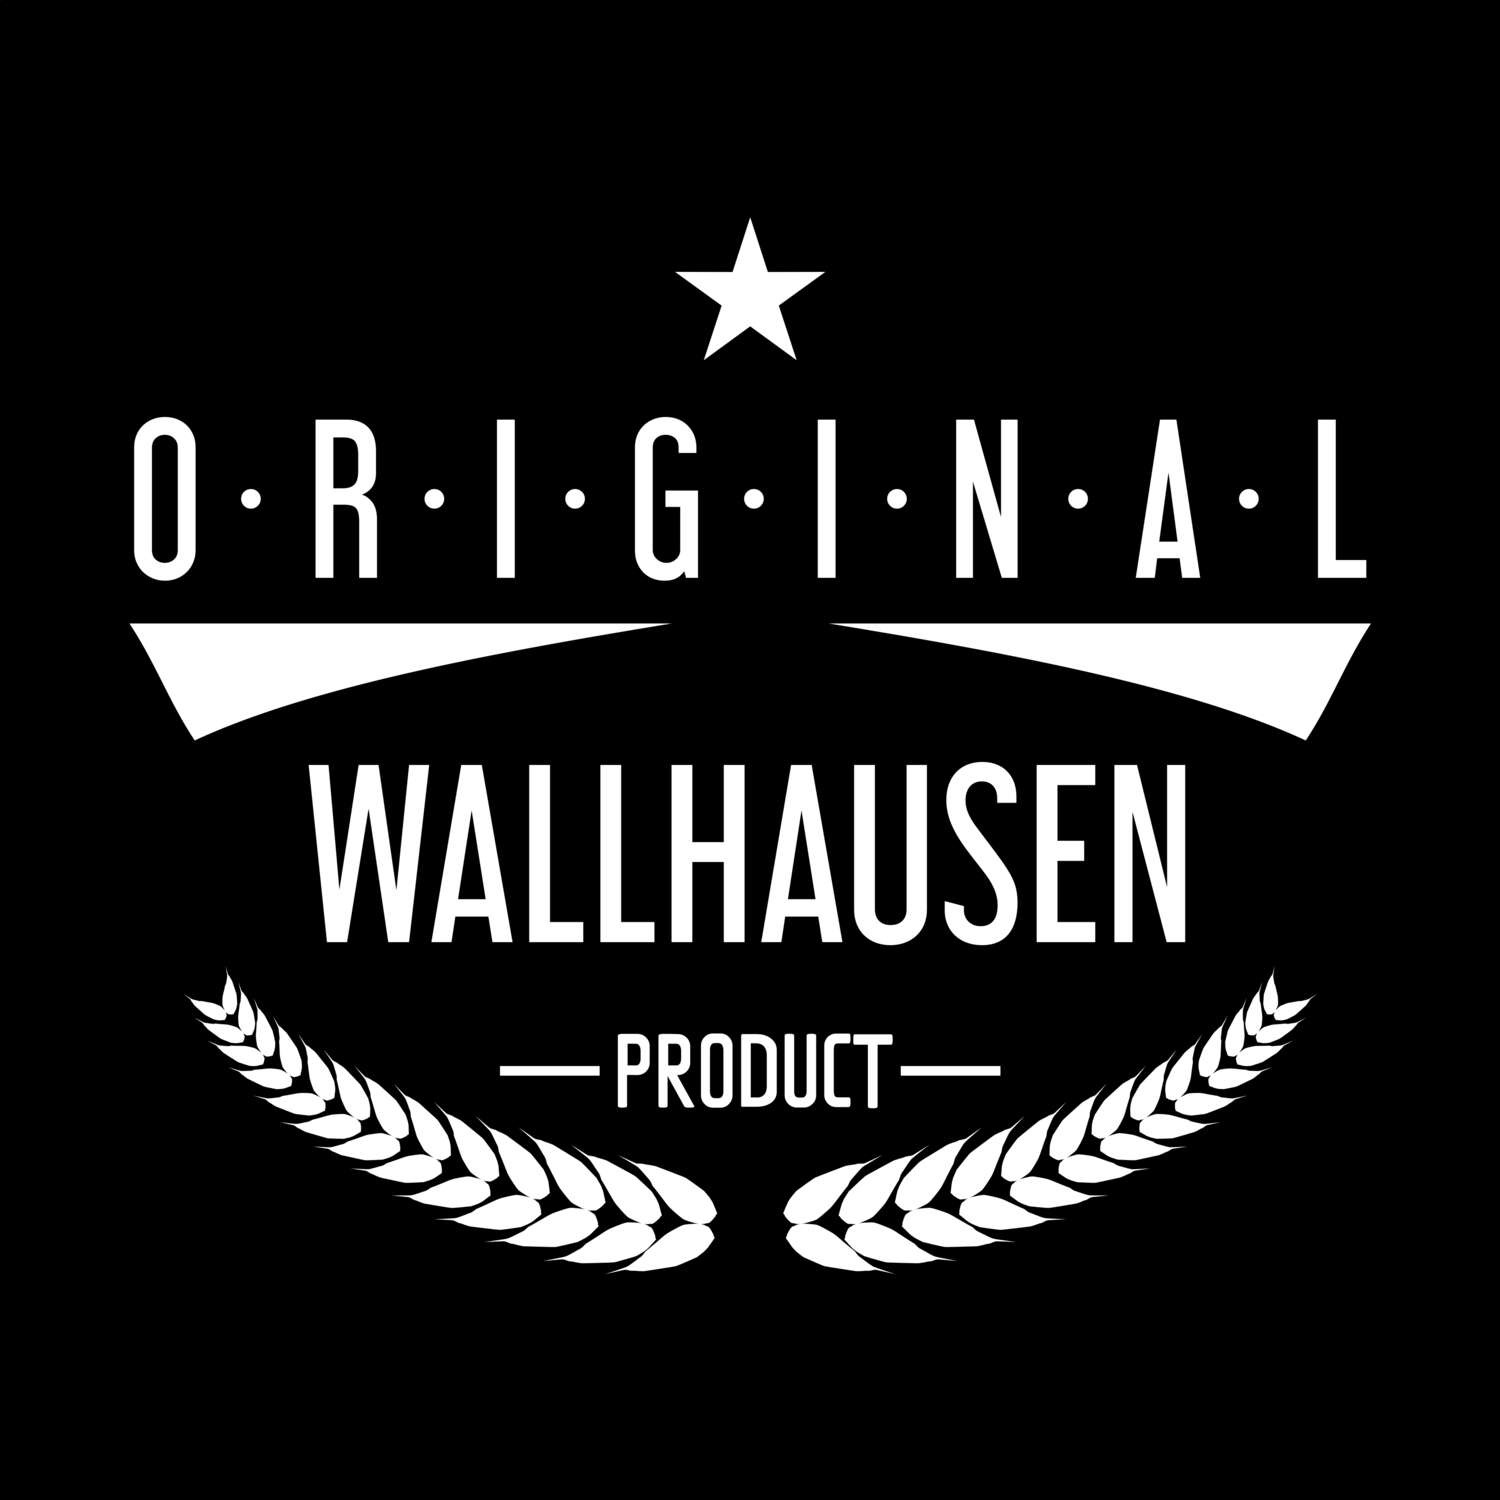 Wallhausen T-Shirt »Original Product«